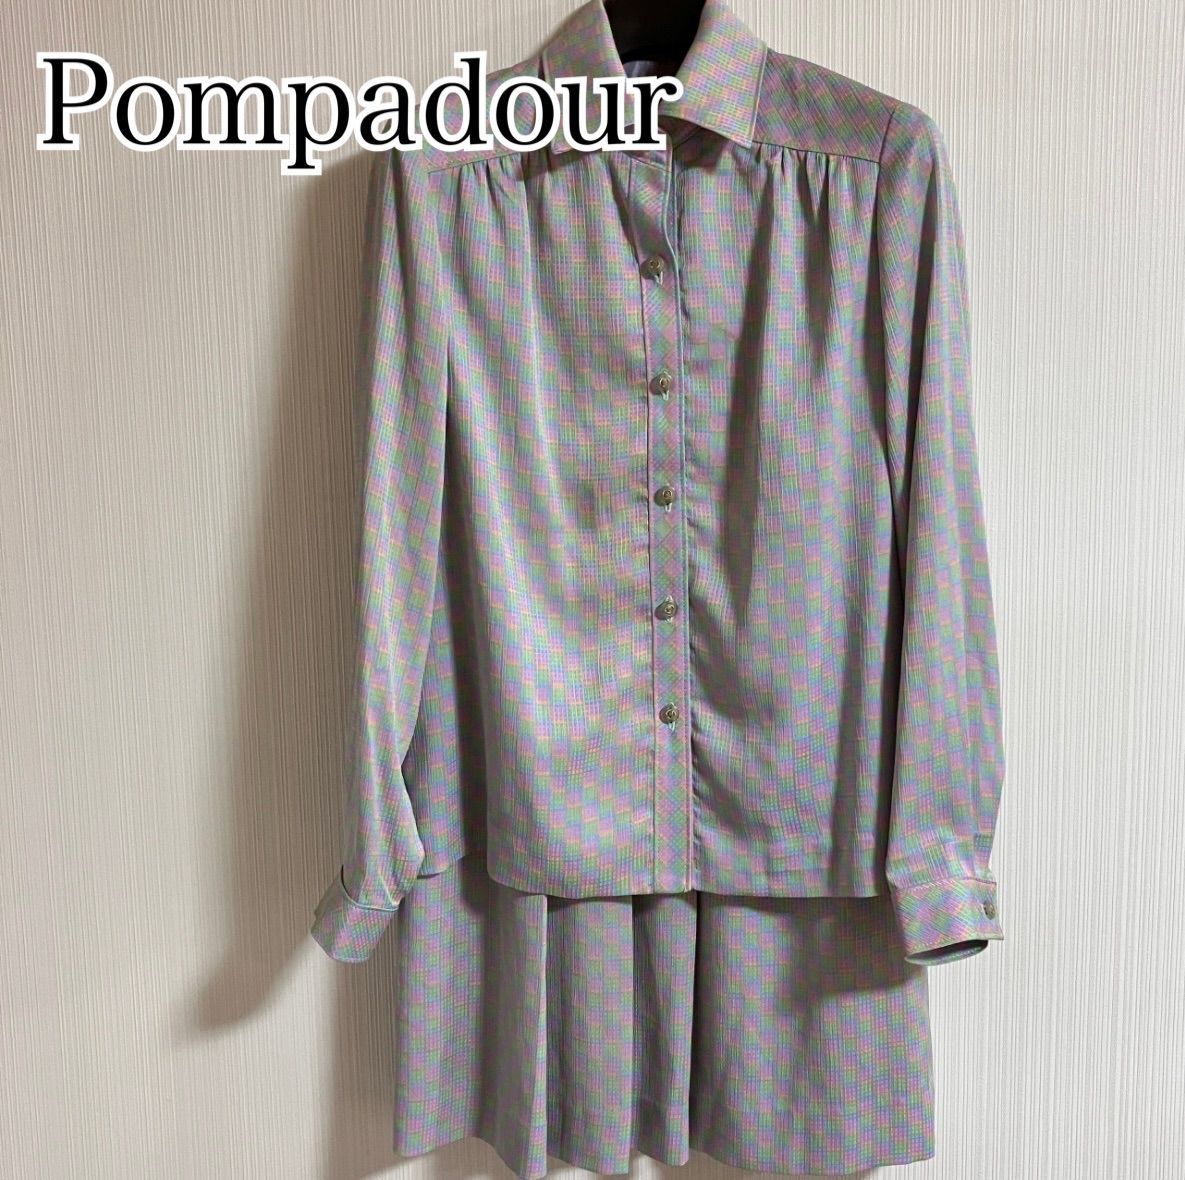 Pompadour ポンパドール 長袖ブラウス シャツ ジャケット スカート セットアップ スーツ フォーマル 入学式 レディース 【c30】_画像1